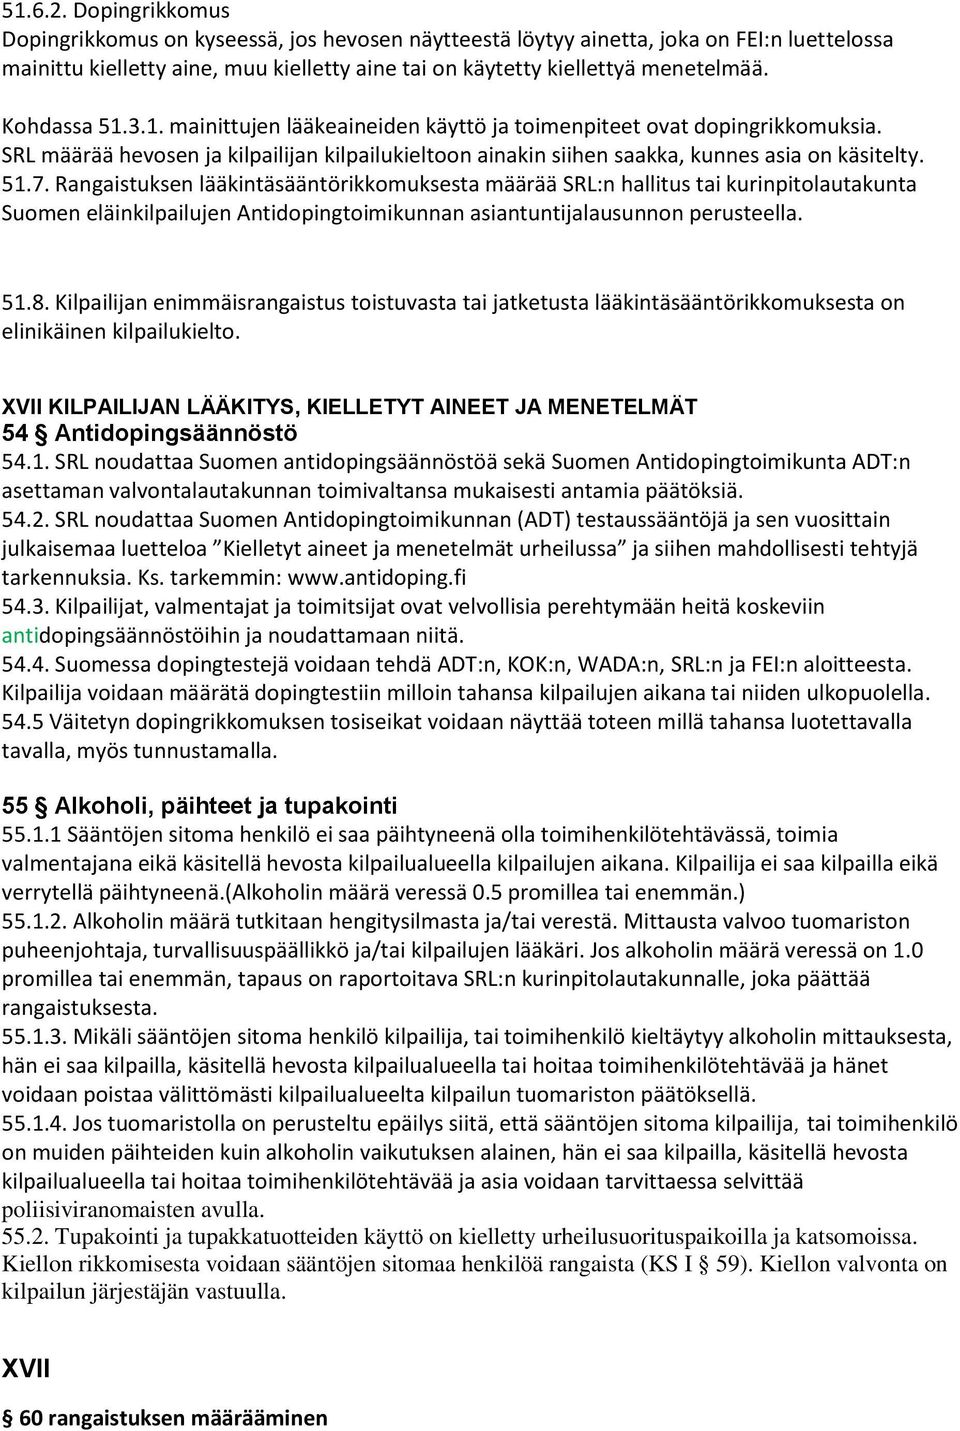 Rangaistuksen lääkintäsääntörikkmuksesta määrää SRL:n hallitus tai kurinpitlautakunta Sumen eläinkilpailujen Antidpingtimikunnan asiantuntijalausunnn perusteella. 51.8.